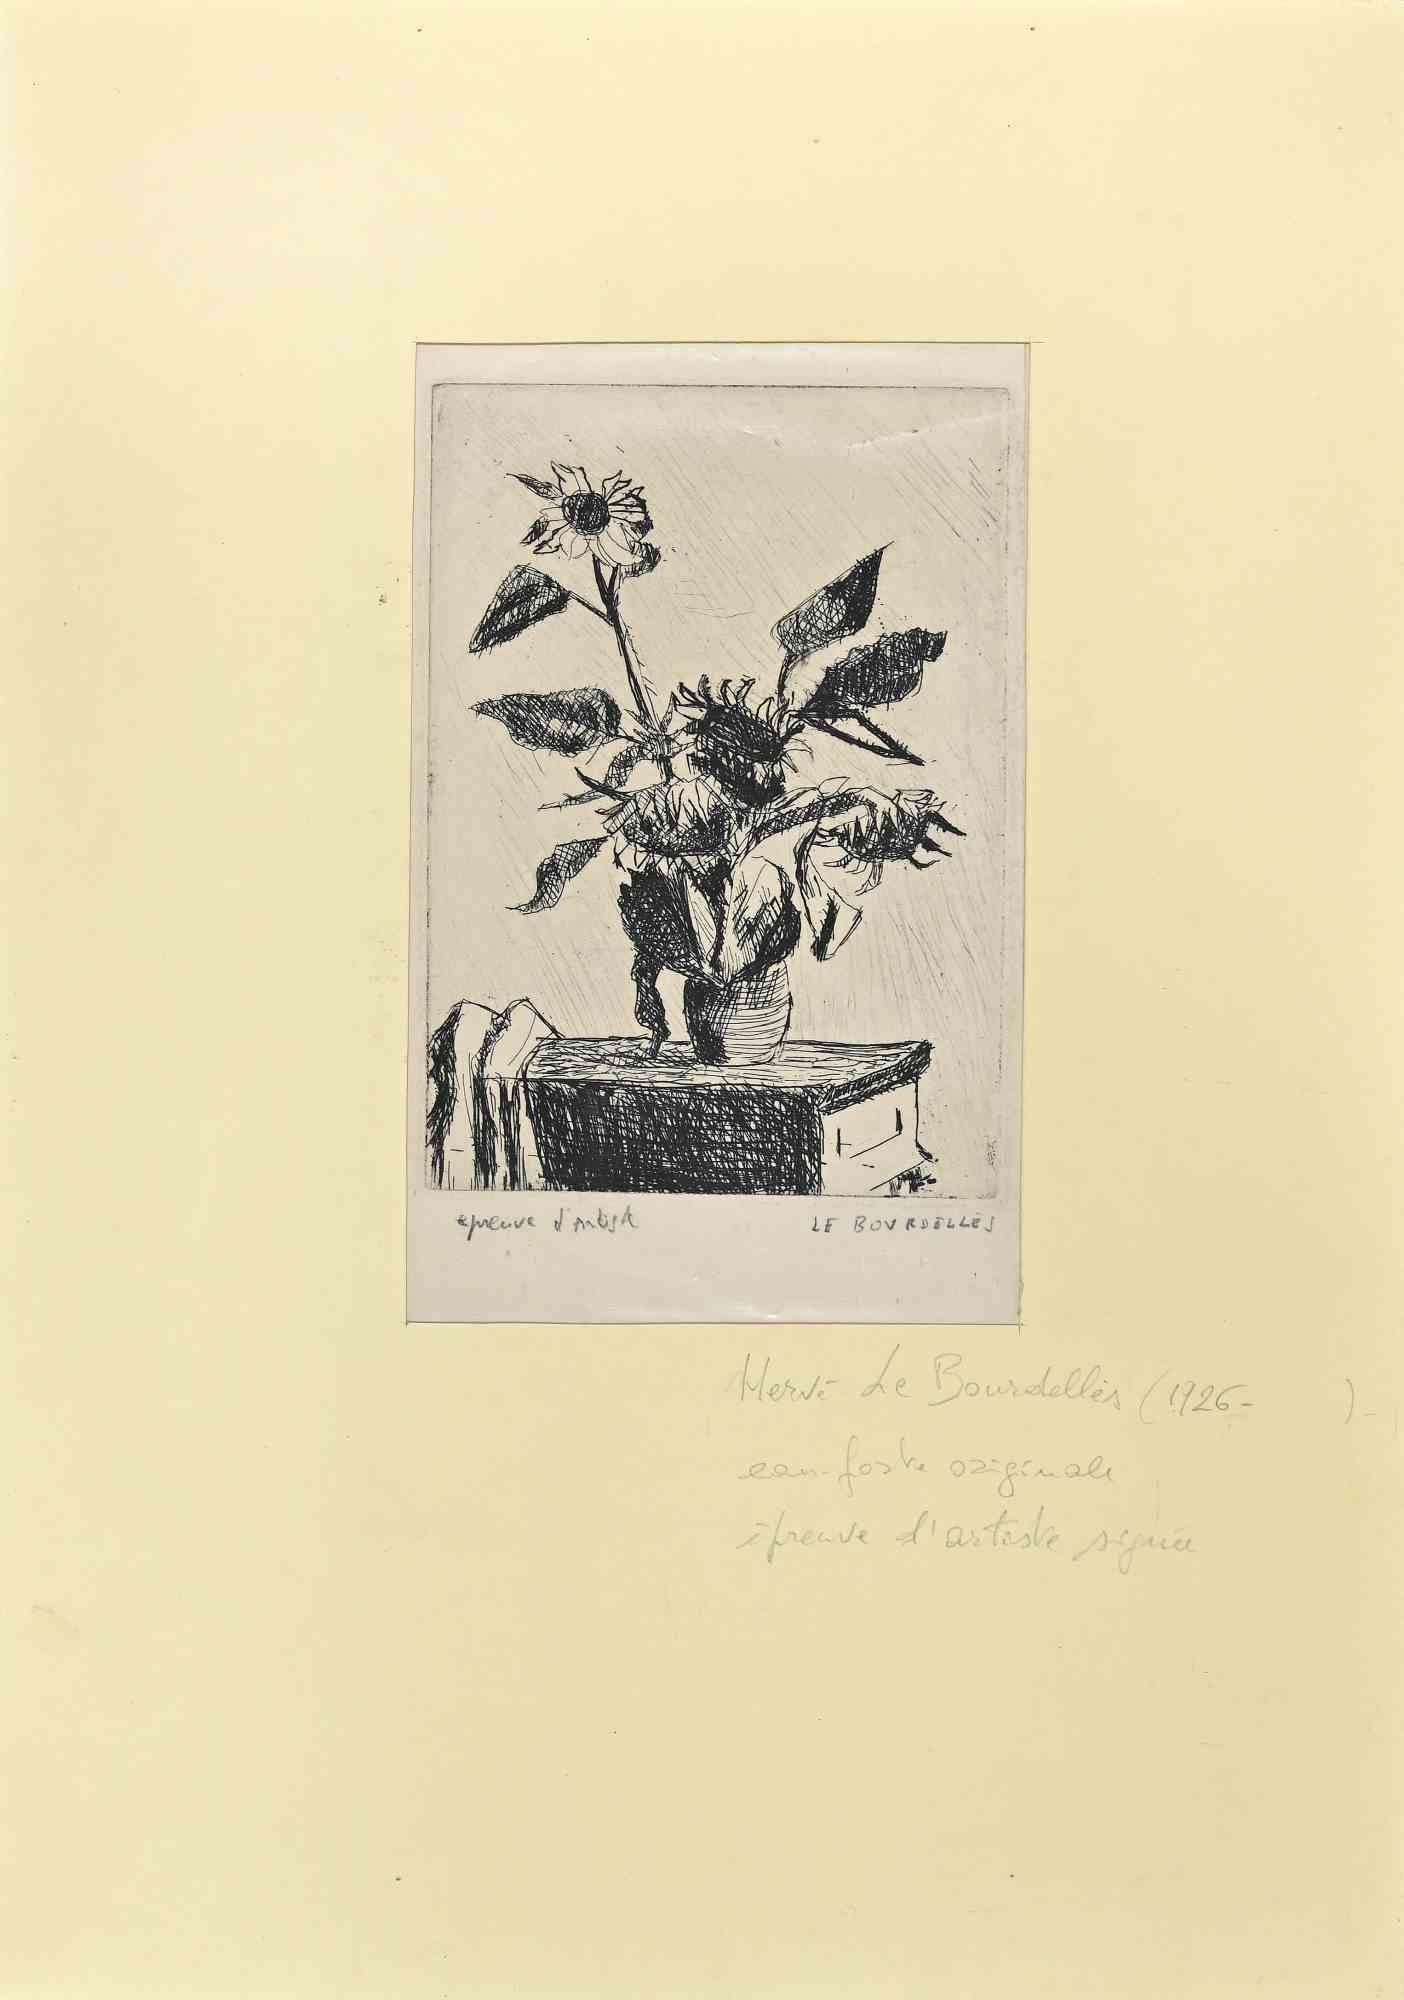 Hervé Le Bourdelles Figurative Print - Flowerpot - Original Etching by H. Le Bourdelles - 1960s